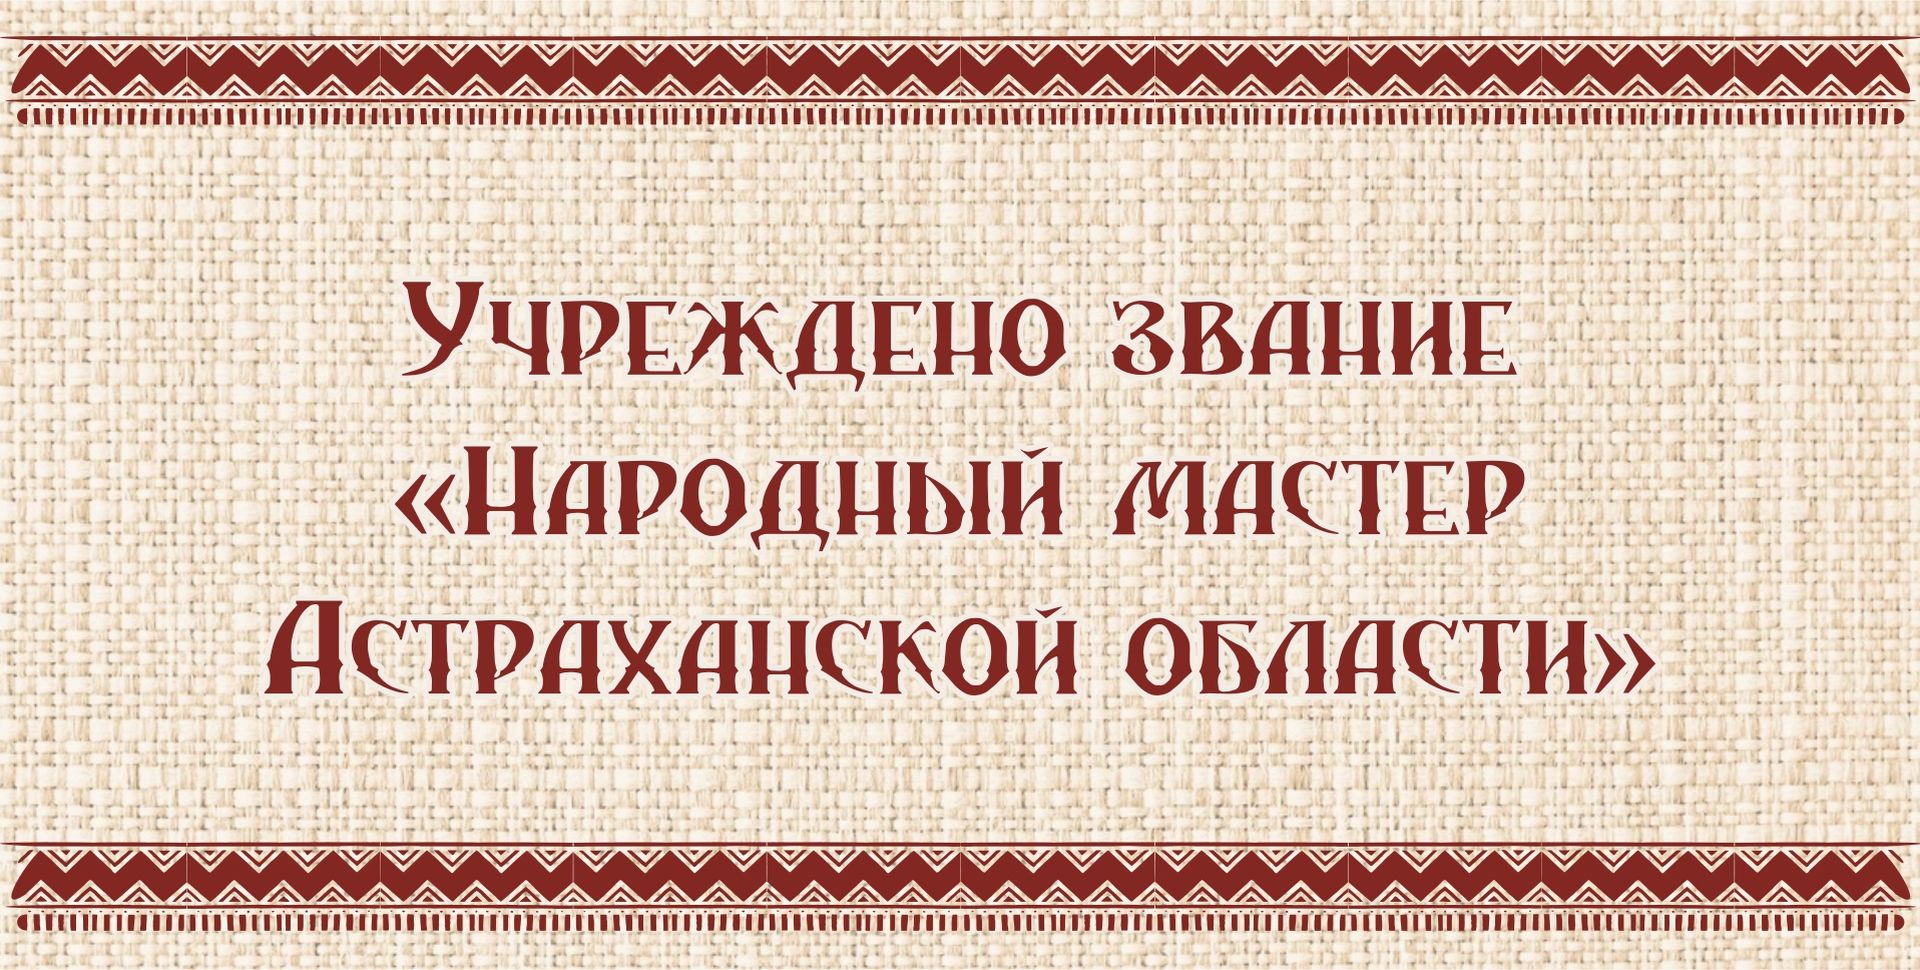 Звание «Народный мастер» учреждено в Астраханской области